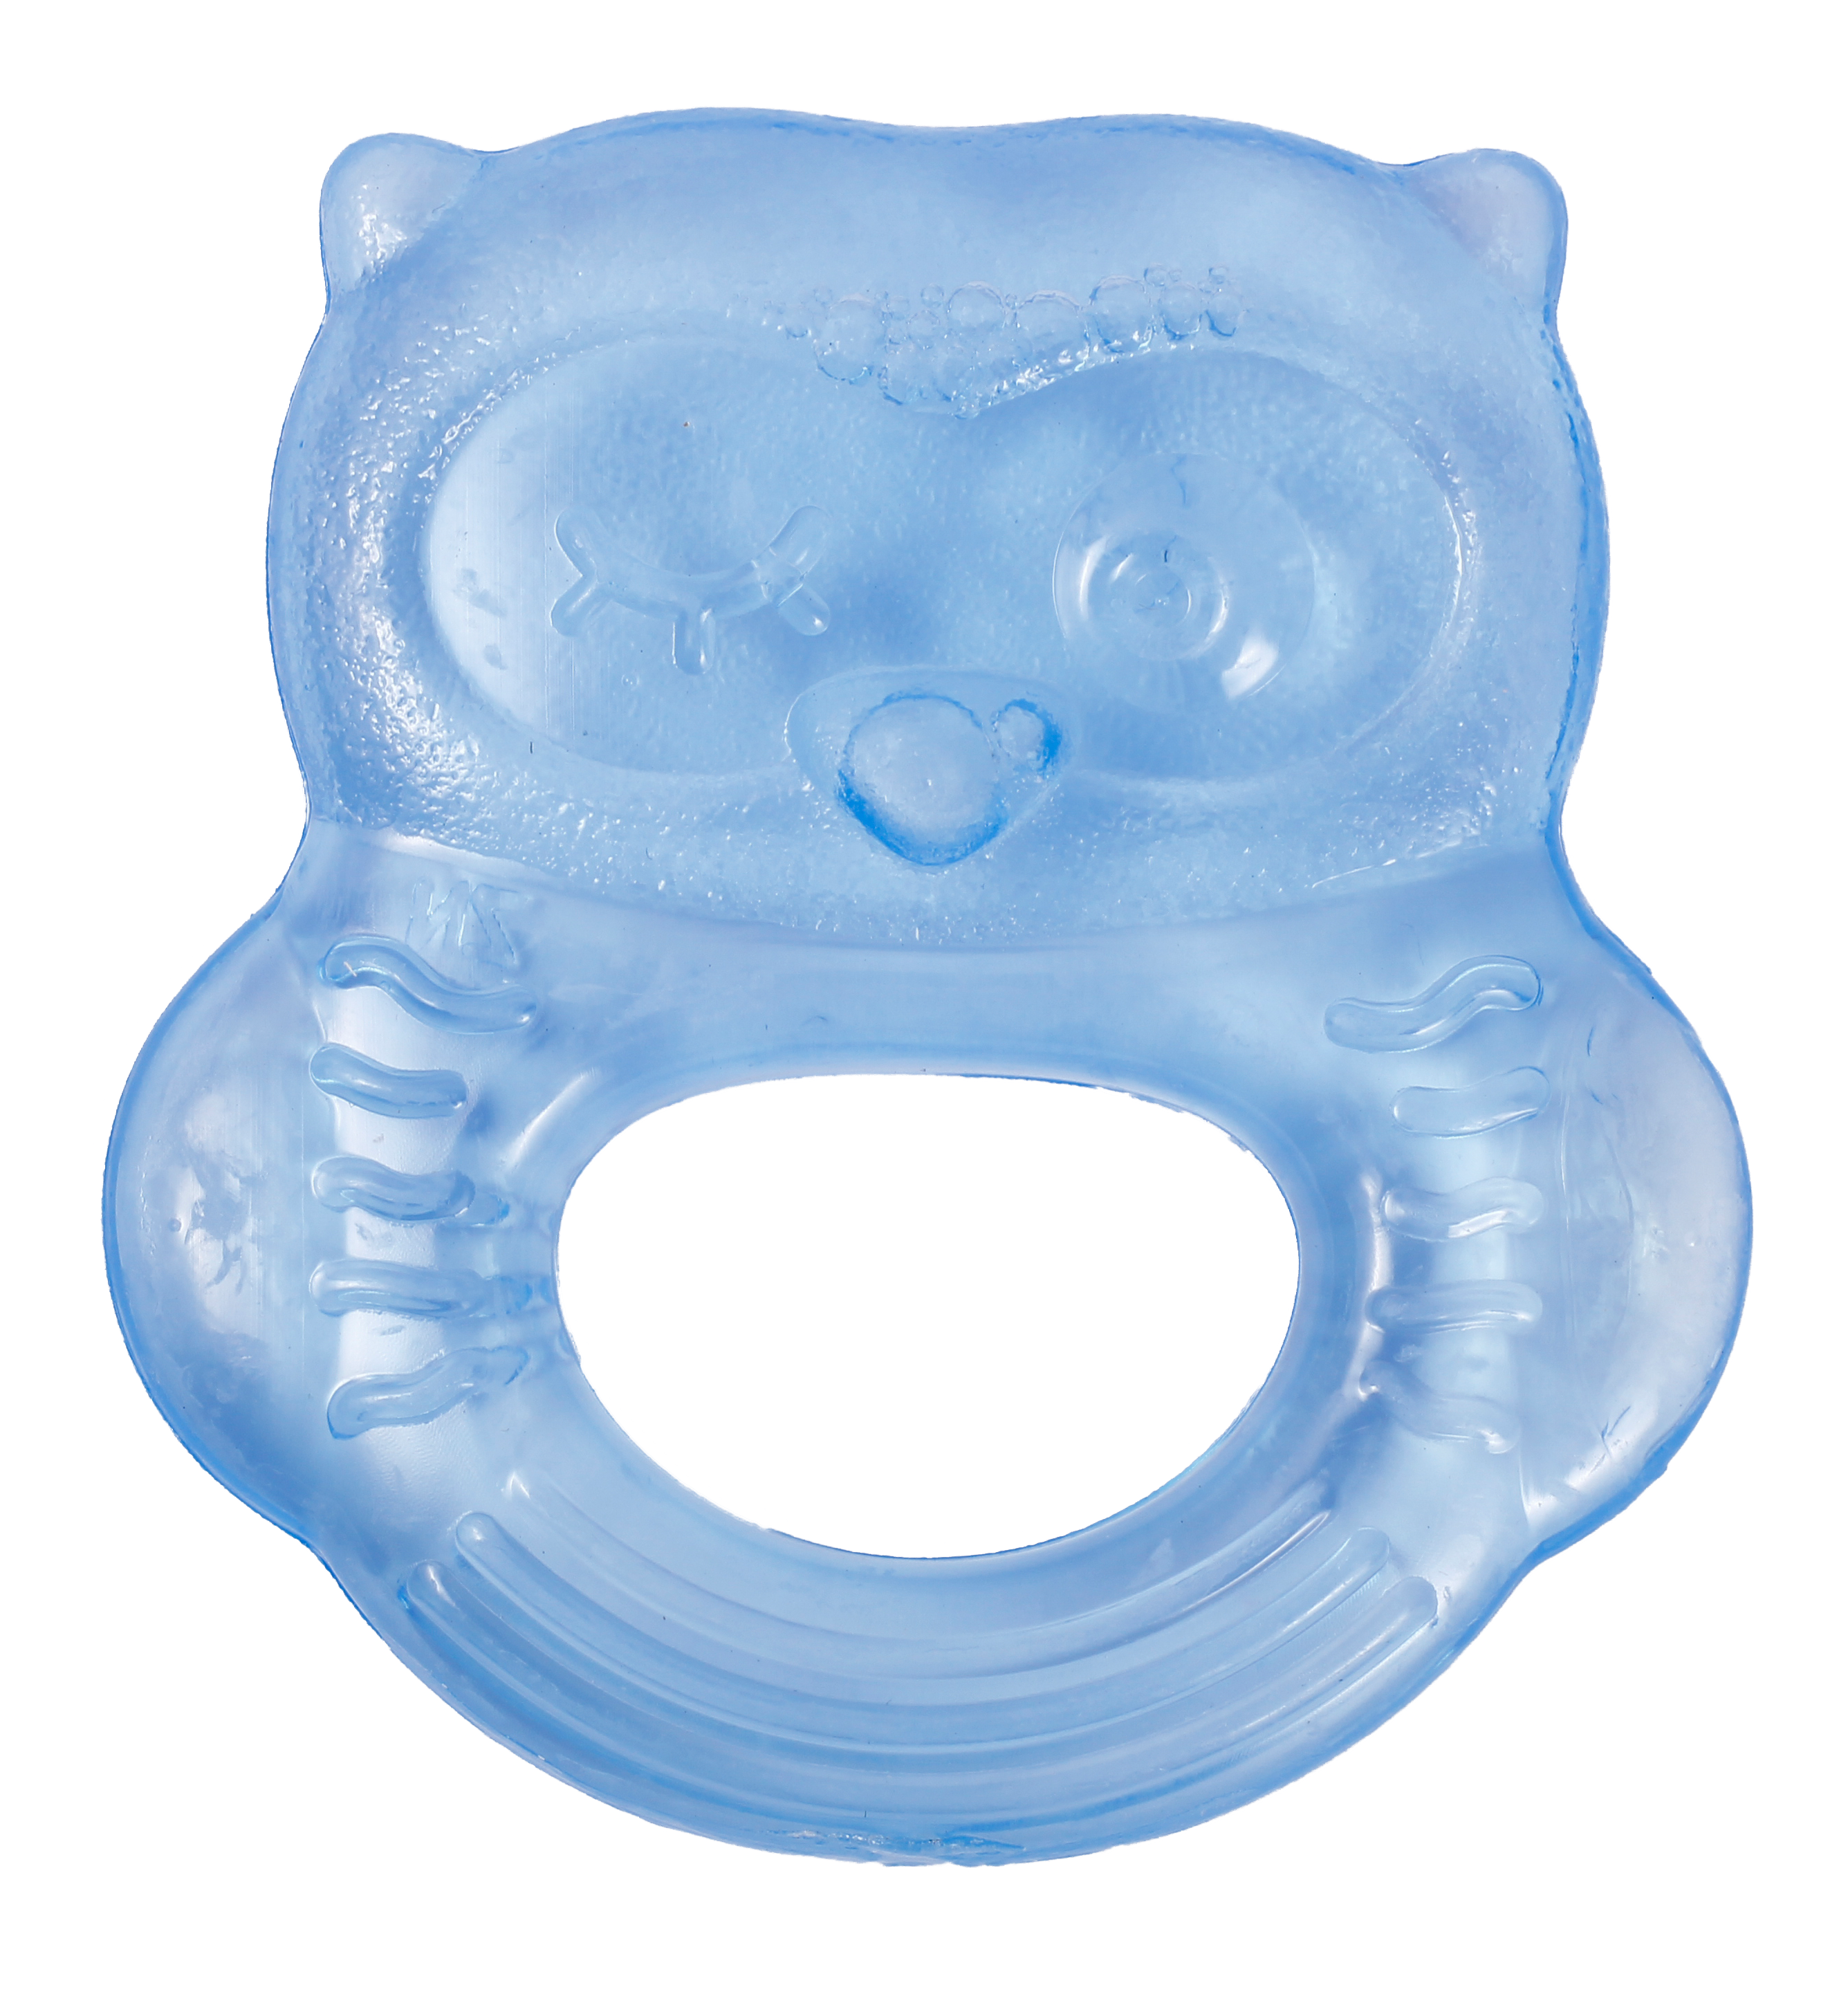 Прорізувач для зубів Lindo Сова, з водою, синій (Li 318 син) - фото 1